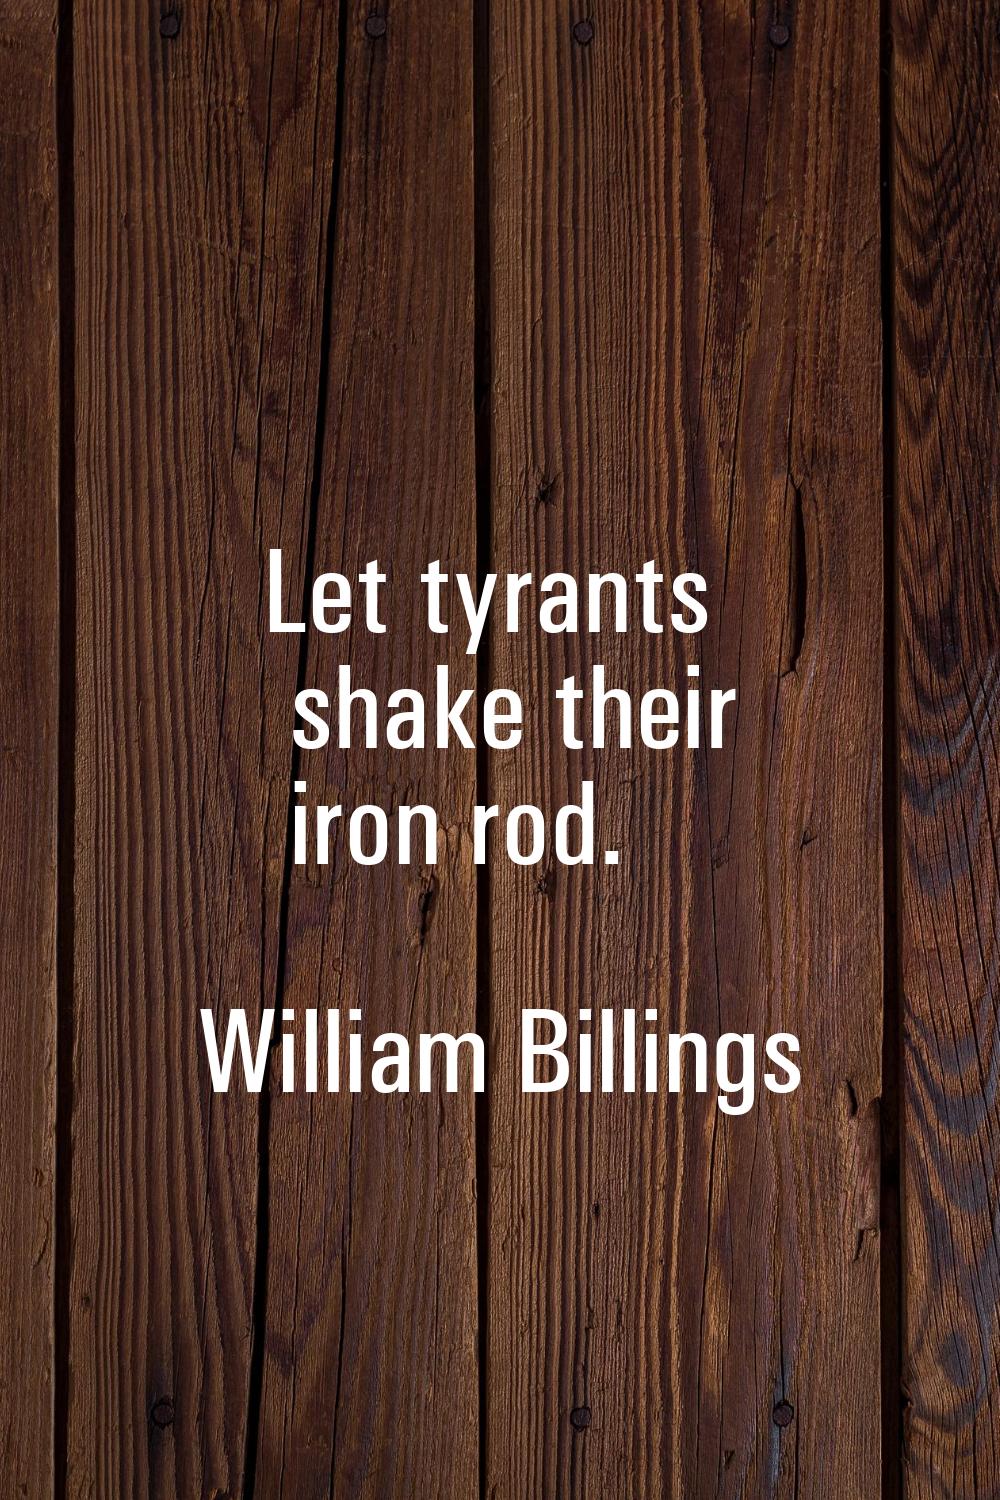 Let tyrants shake their iron rod.